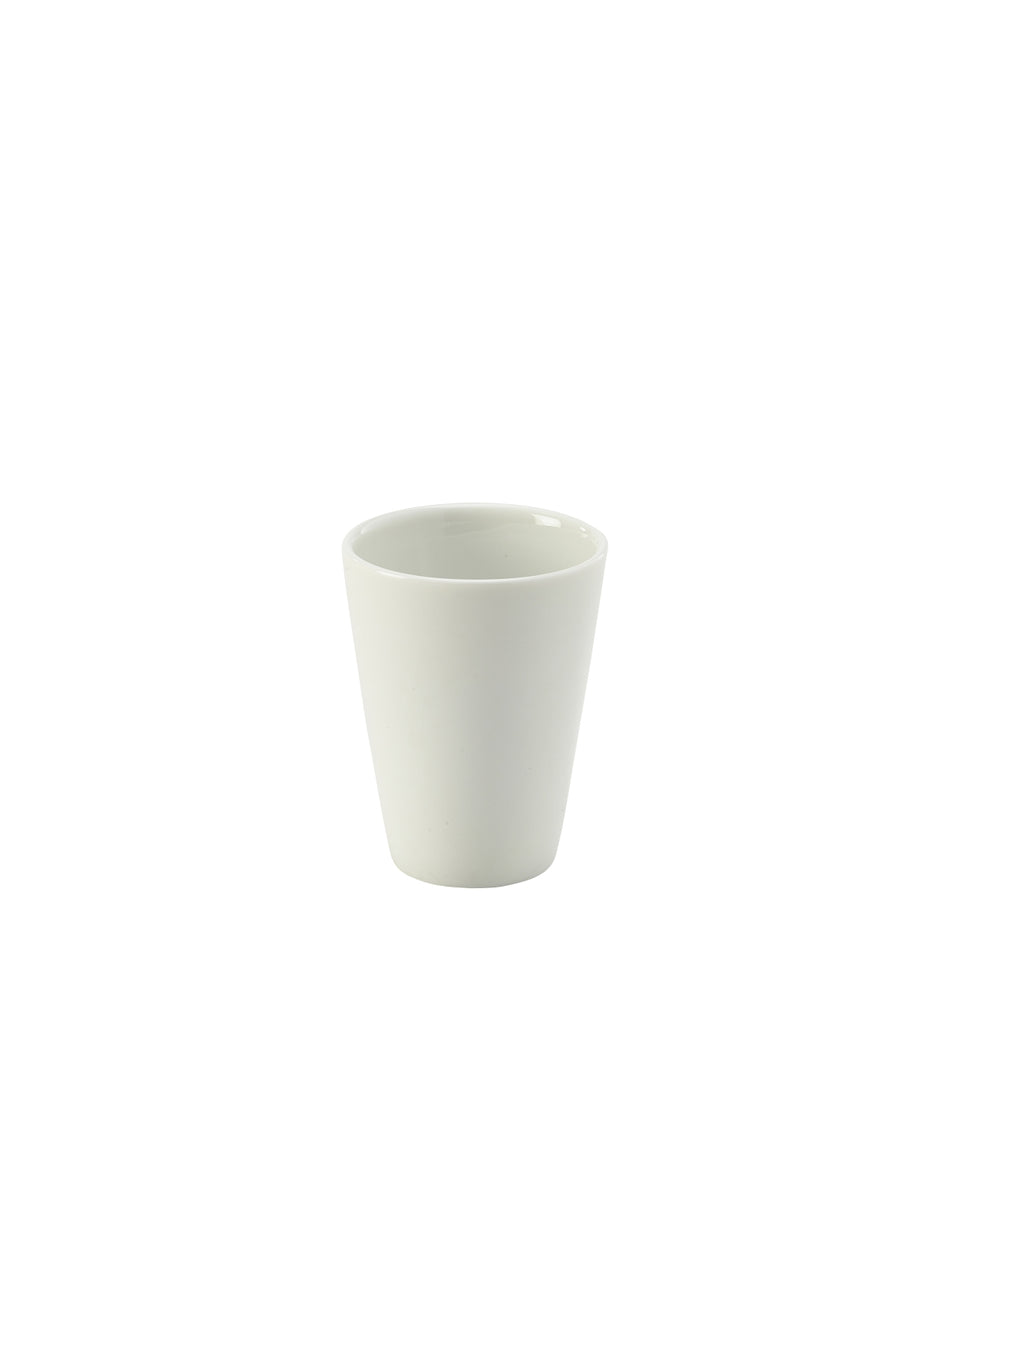 Genware Porcelain Conical Sugar Stick Holder 8cm/3.25"